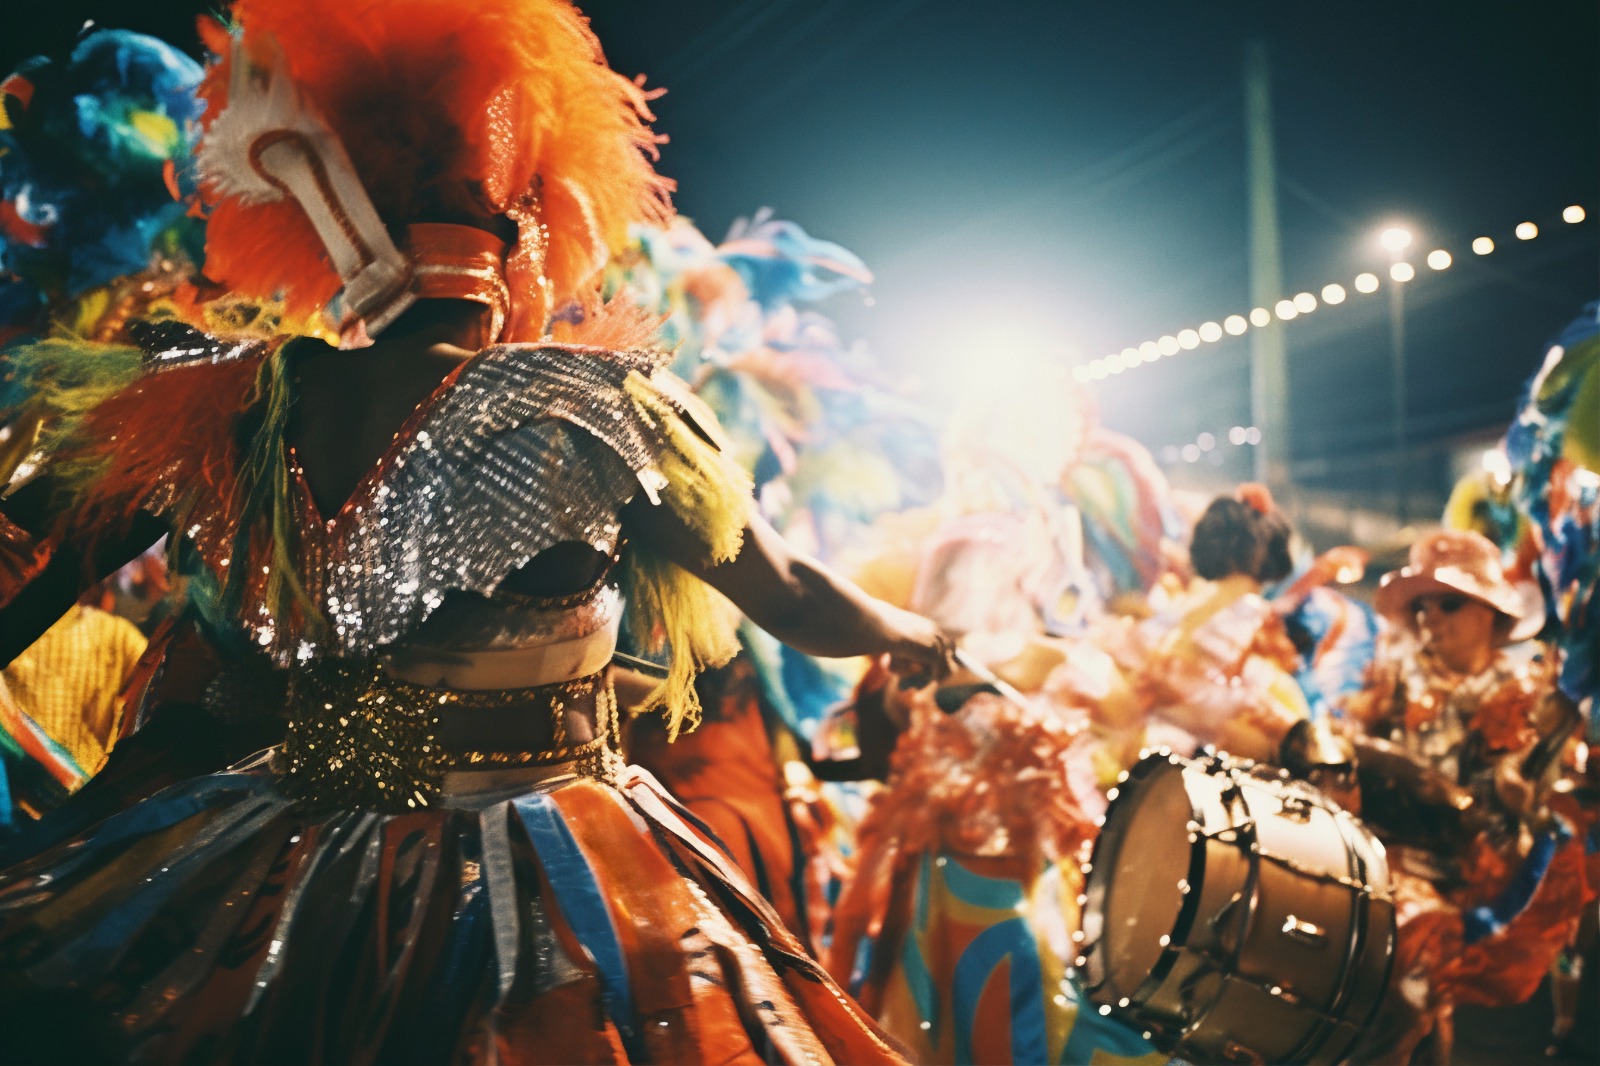 Vivir el Carnaval: planes diferentes (y con onda) si te quedás en La Plata